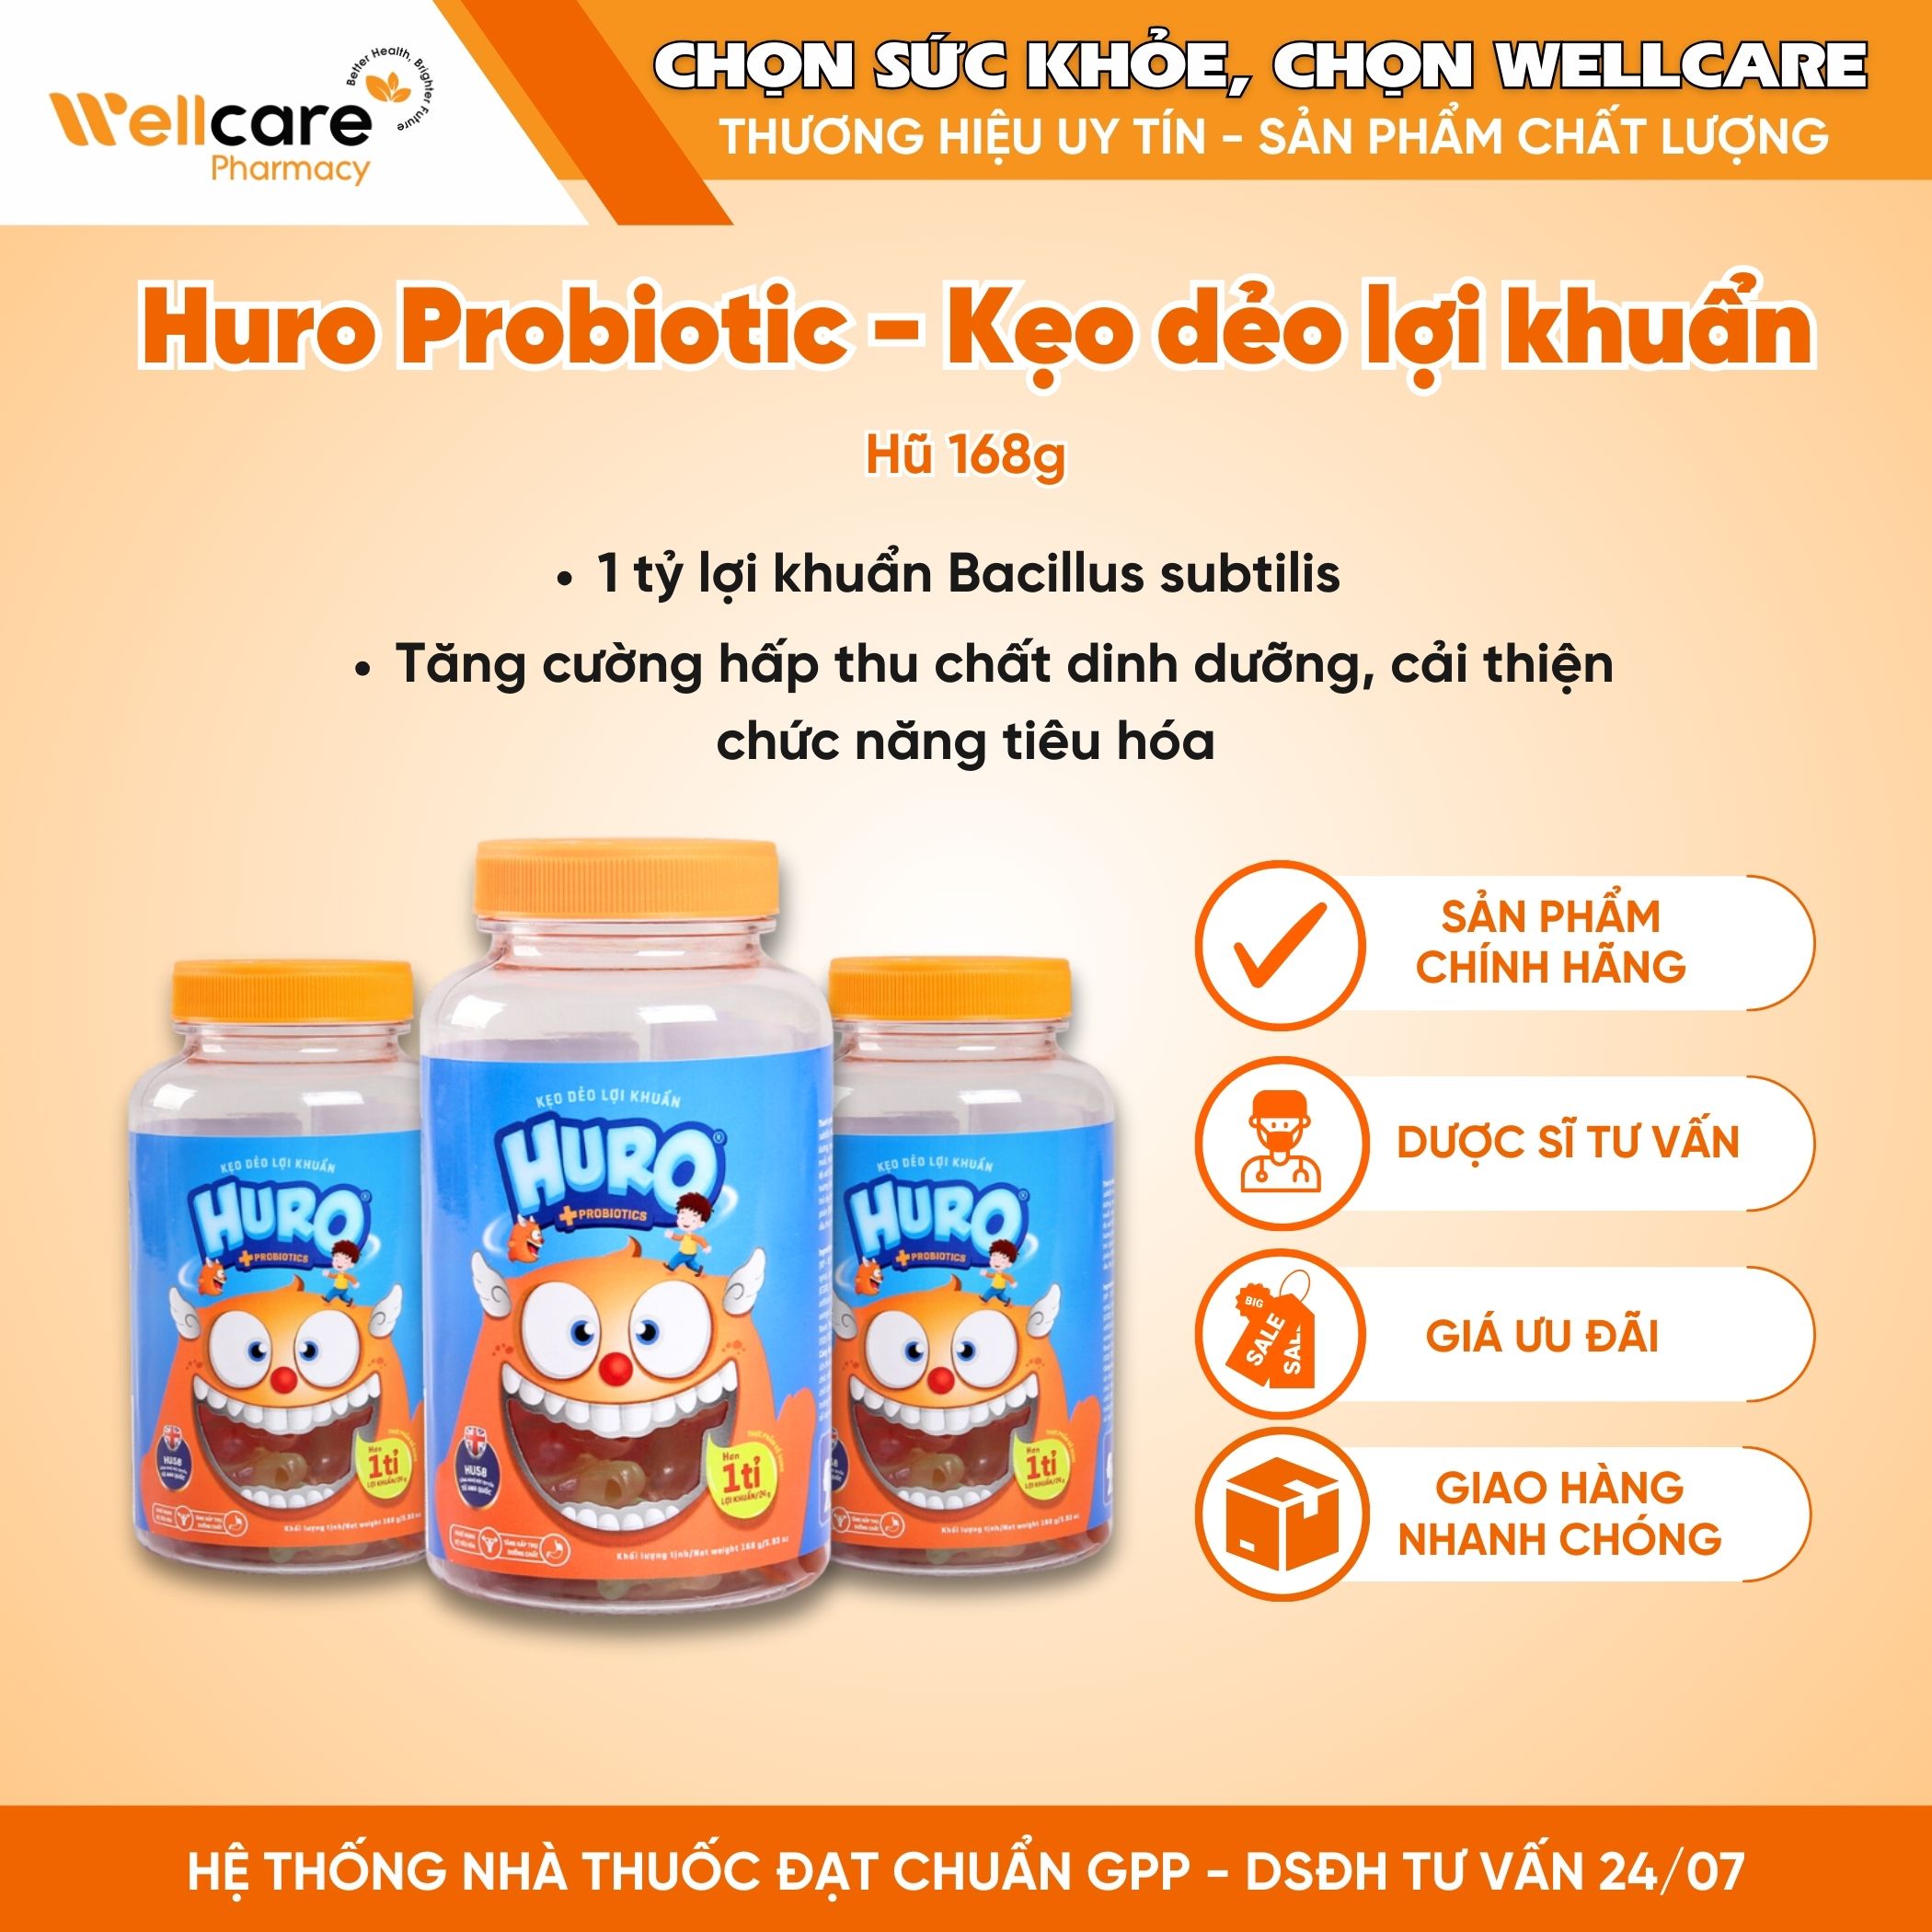 Kẹo dẻo lợi khuẩn Huro Probiotics – Bổ sung lợi khuẩn, hỗ trợ tốt cho tiêu hóa đường ruột, bé ăn ngon (Hủ 168g)